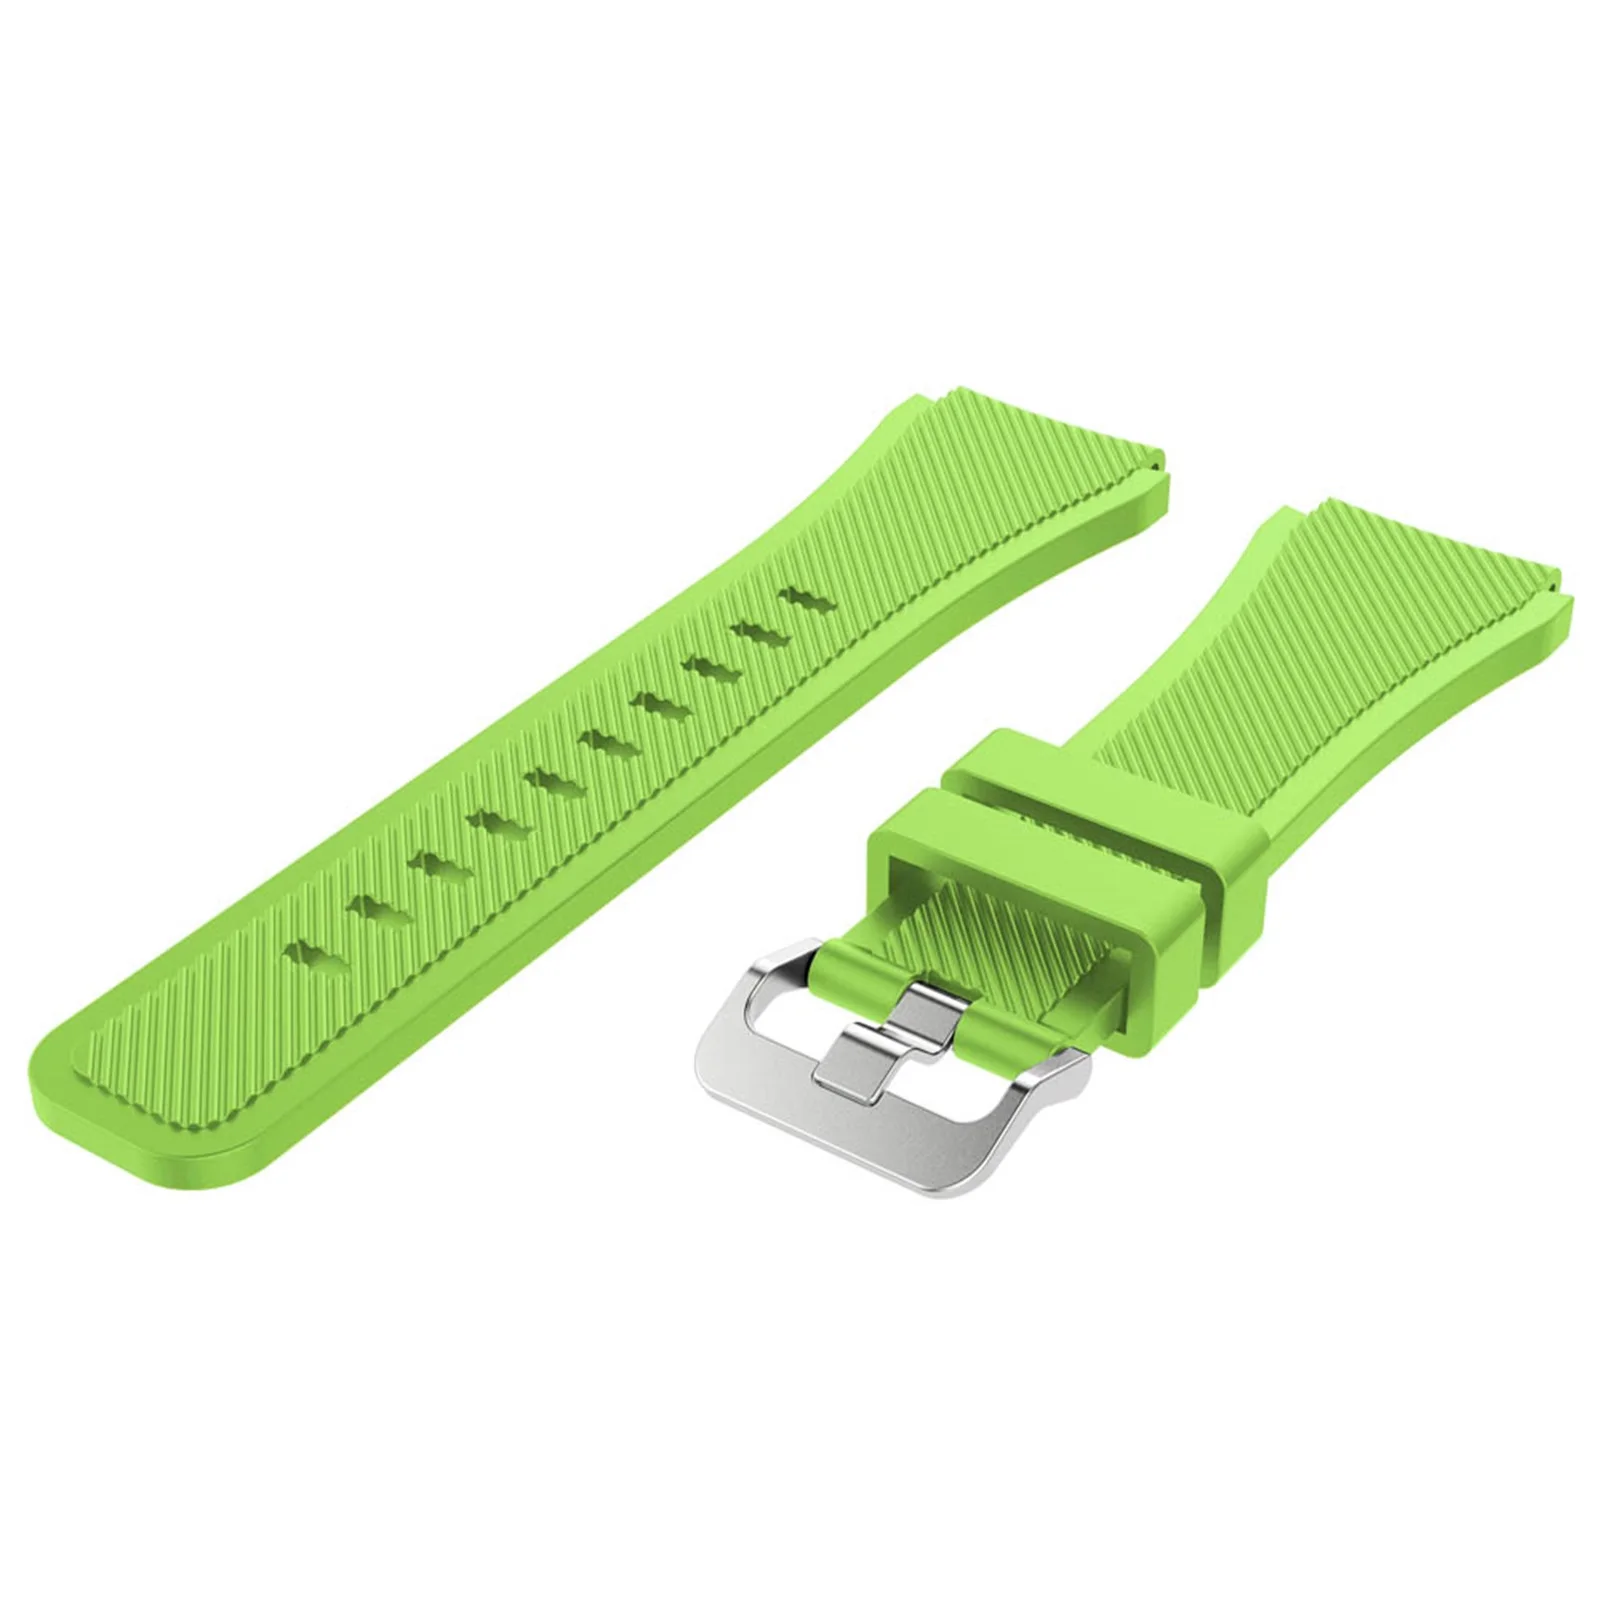 Разноцветный ремешок для часов Ремешок Для Xiaomi Huami Amazfit Pace силиконовый браслет на запястье для Amazfit 2/2S Stratos pace ремешок для часов - Цвет: Зеленый